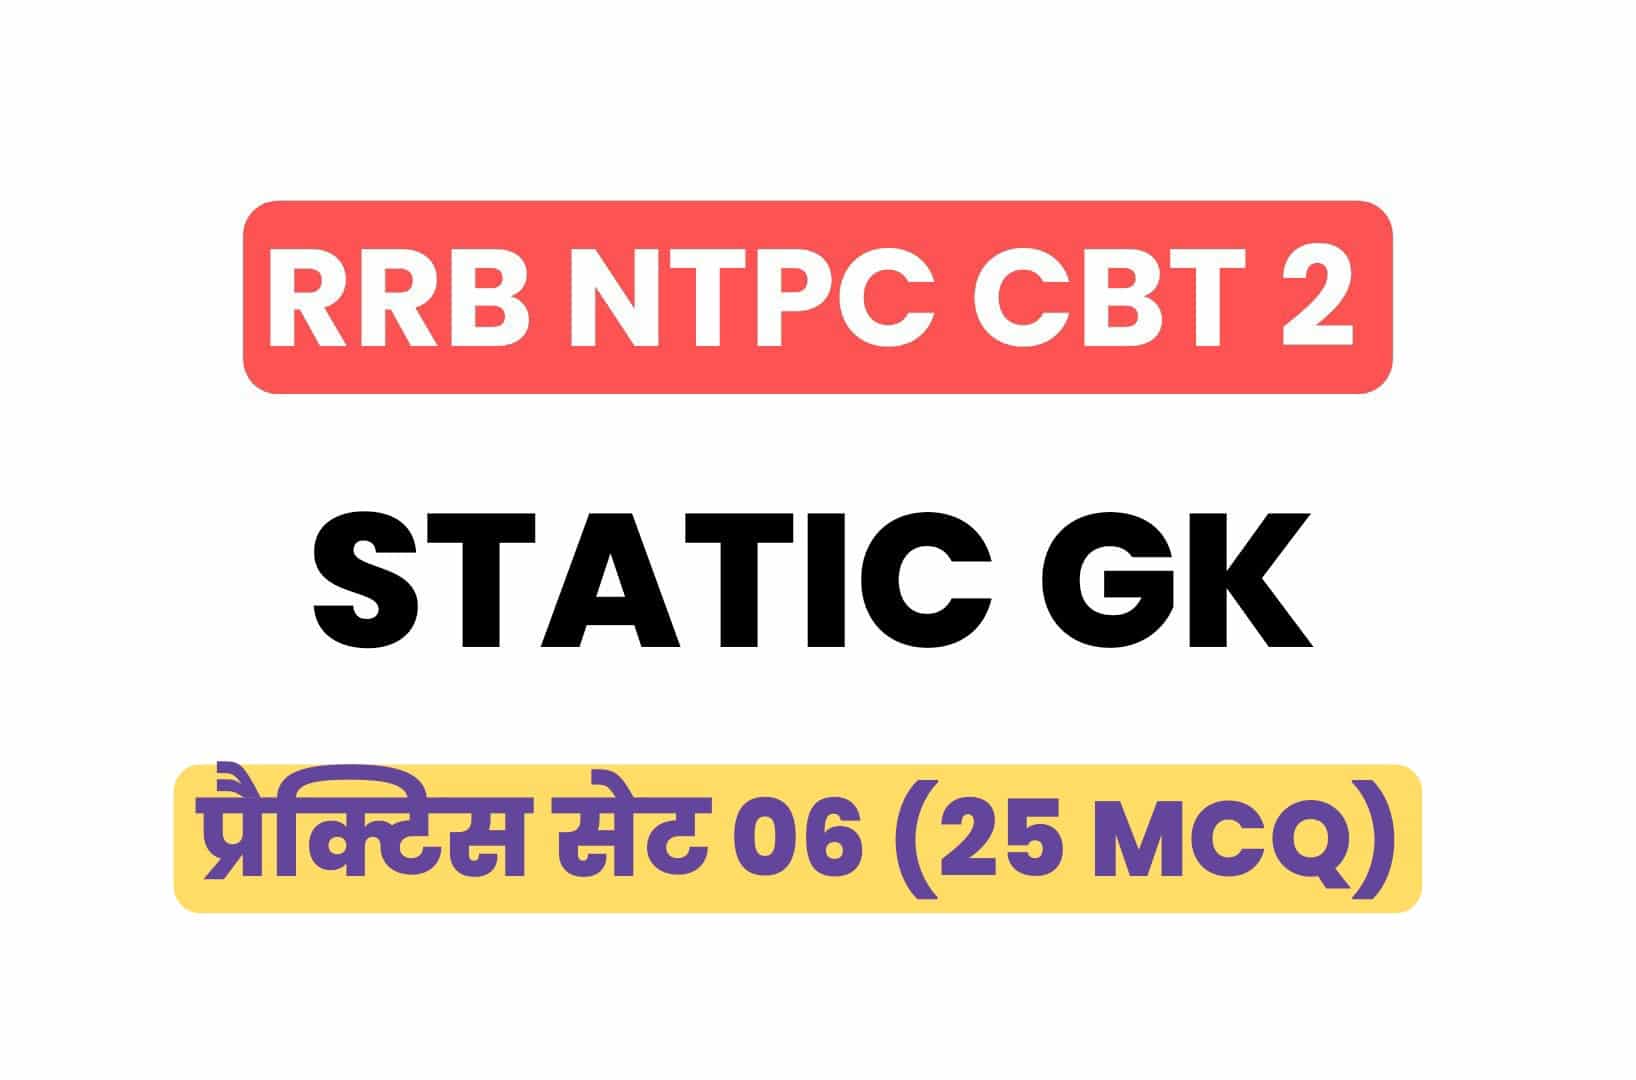 RRB NTPC CBT 2 Static GK प्रैक्टिस सेट 06: परीक्षा में पूछे गये महत्वपूर्ण प्रश्नों का संग्रह, जरूर पढ़ें